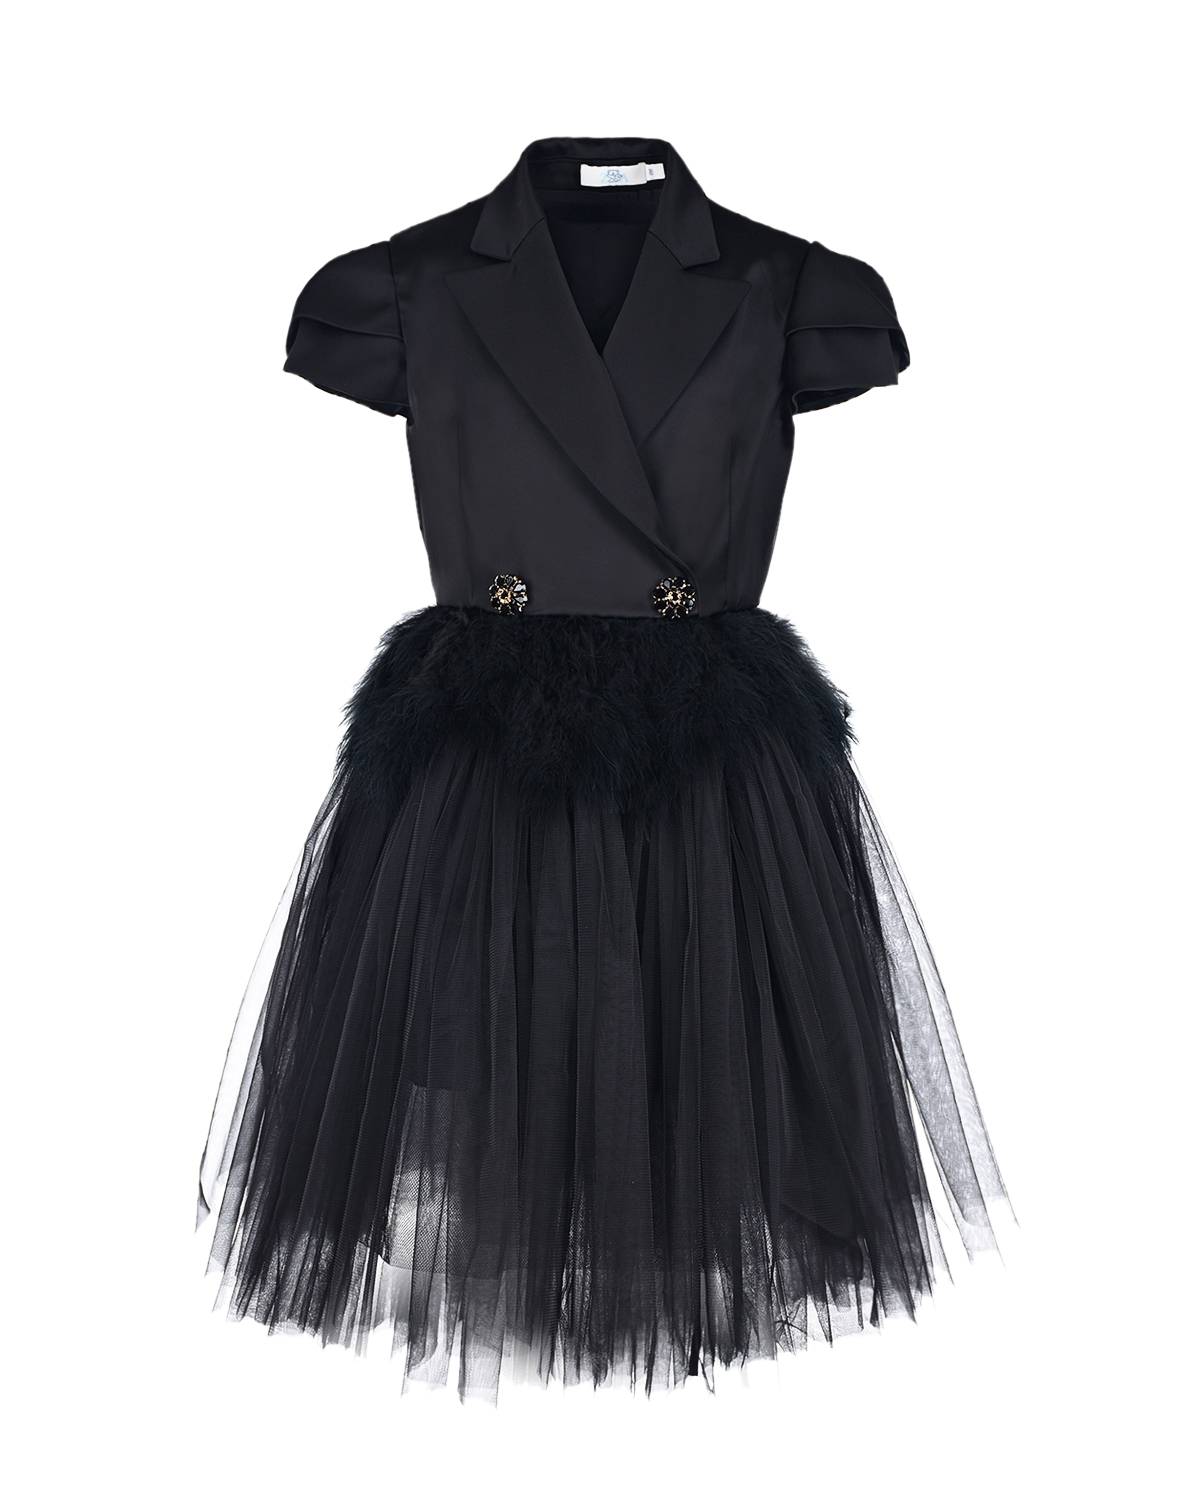 Черное платье "Black Swan" с отделкой перьями Zhanna&Anna детское, размер 164, цвет черный